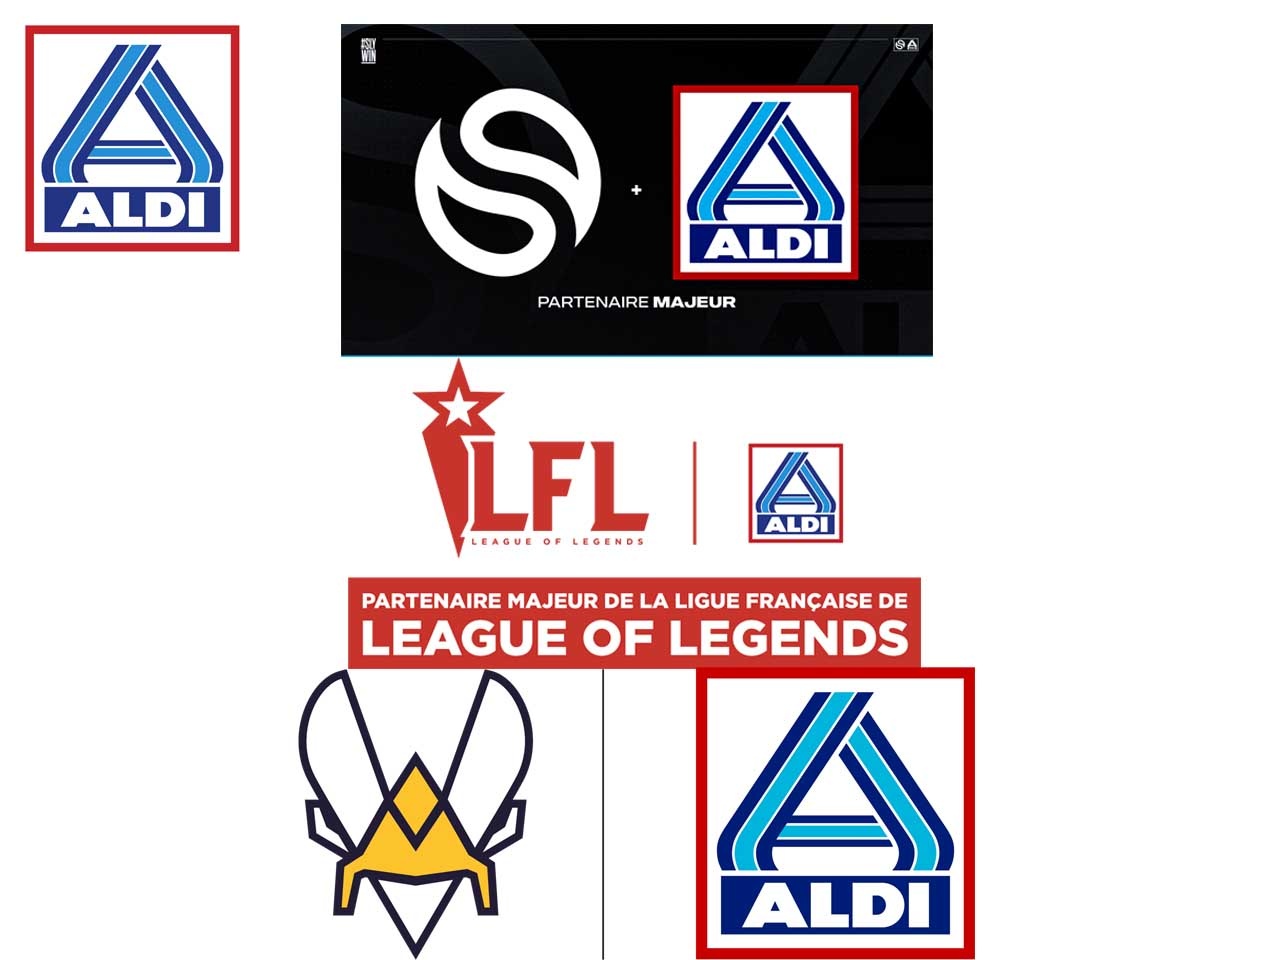 ALDI s’engage dans l’esport et devient partenaire des équipes Solary, Team Vitality et de la ligue française de League of Legends